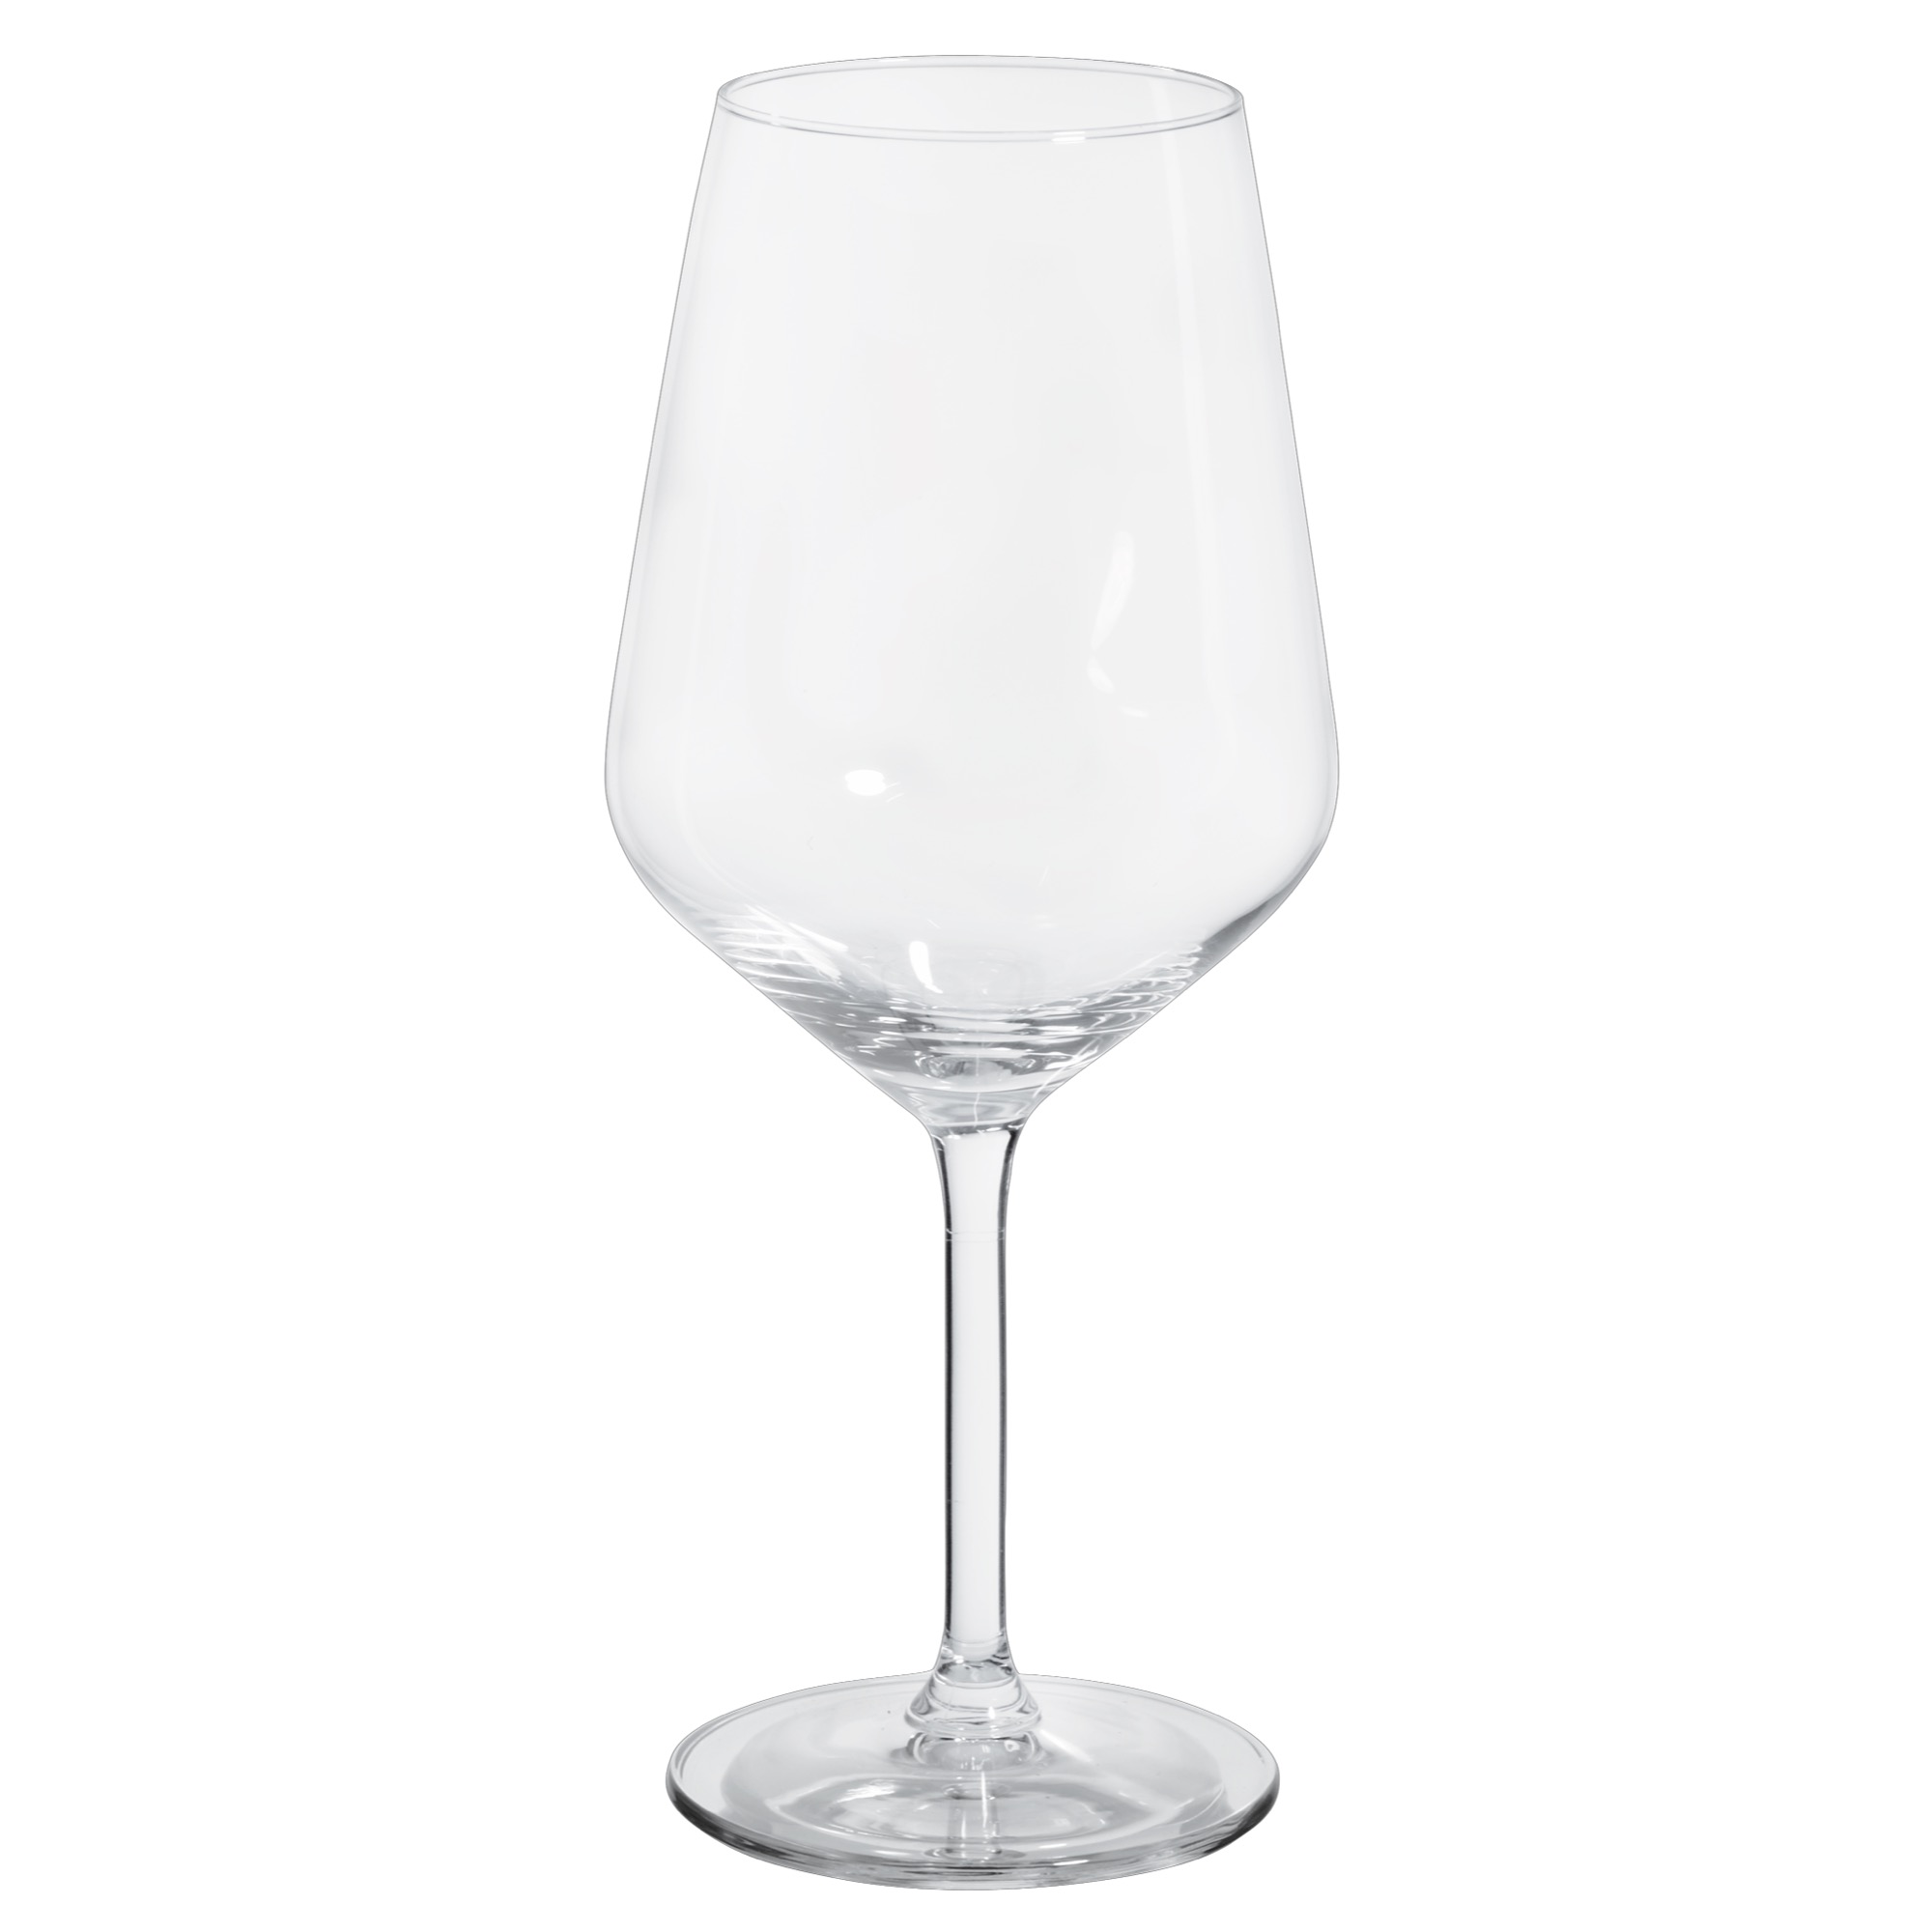 Royal Carré pohár/víno 530ml